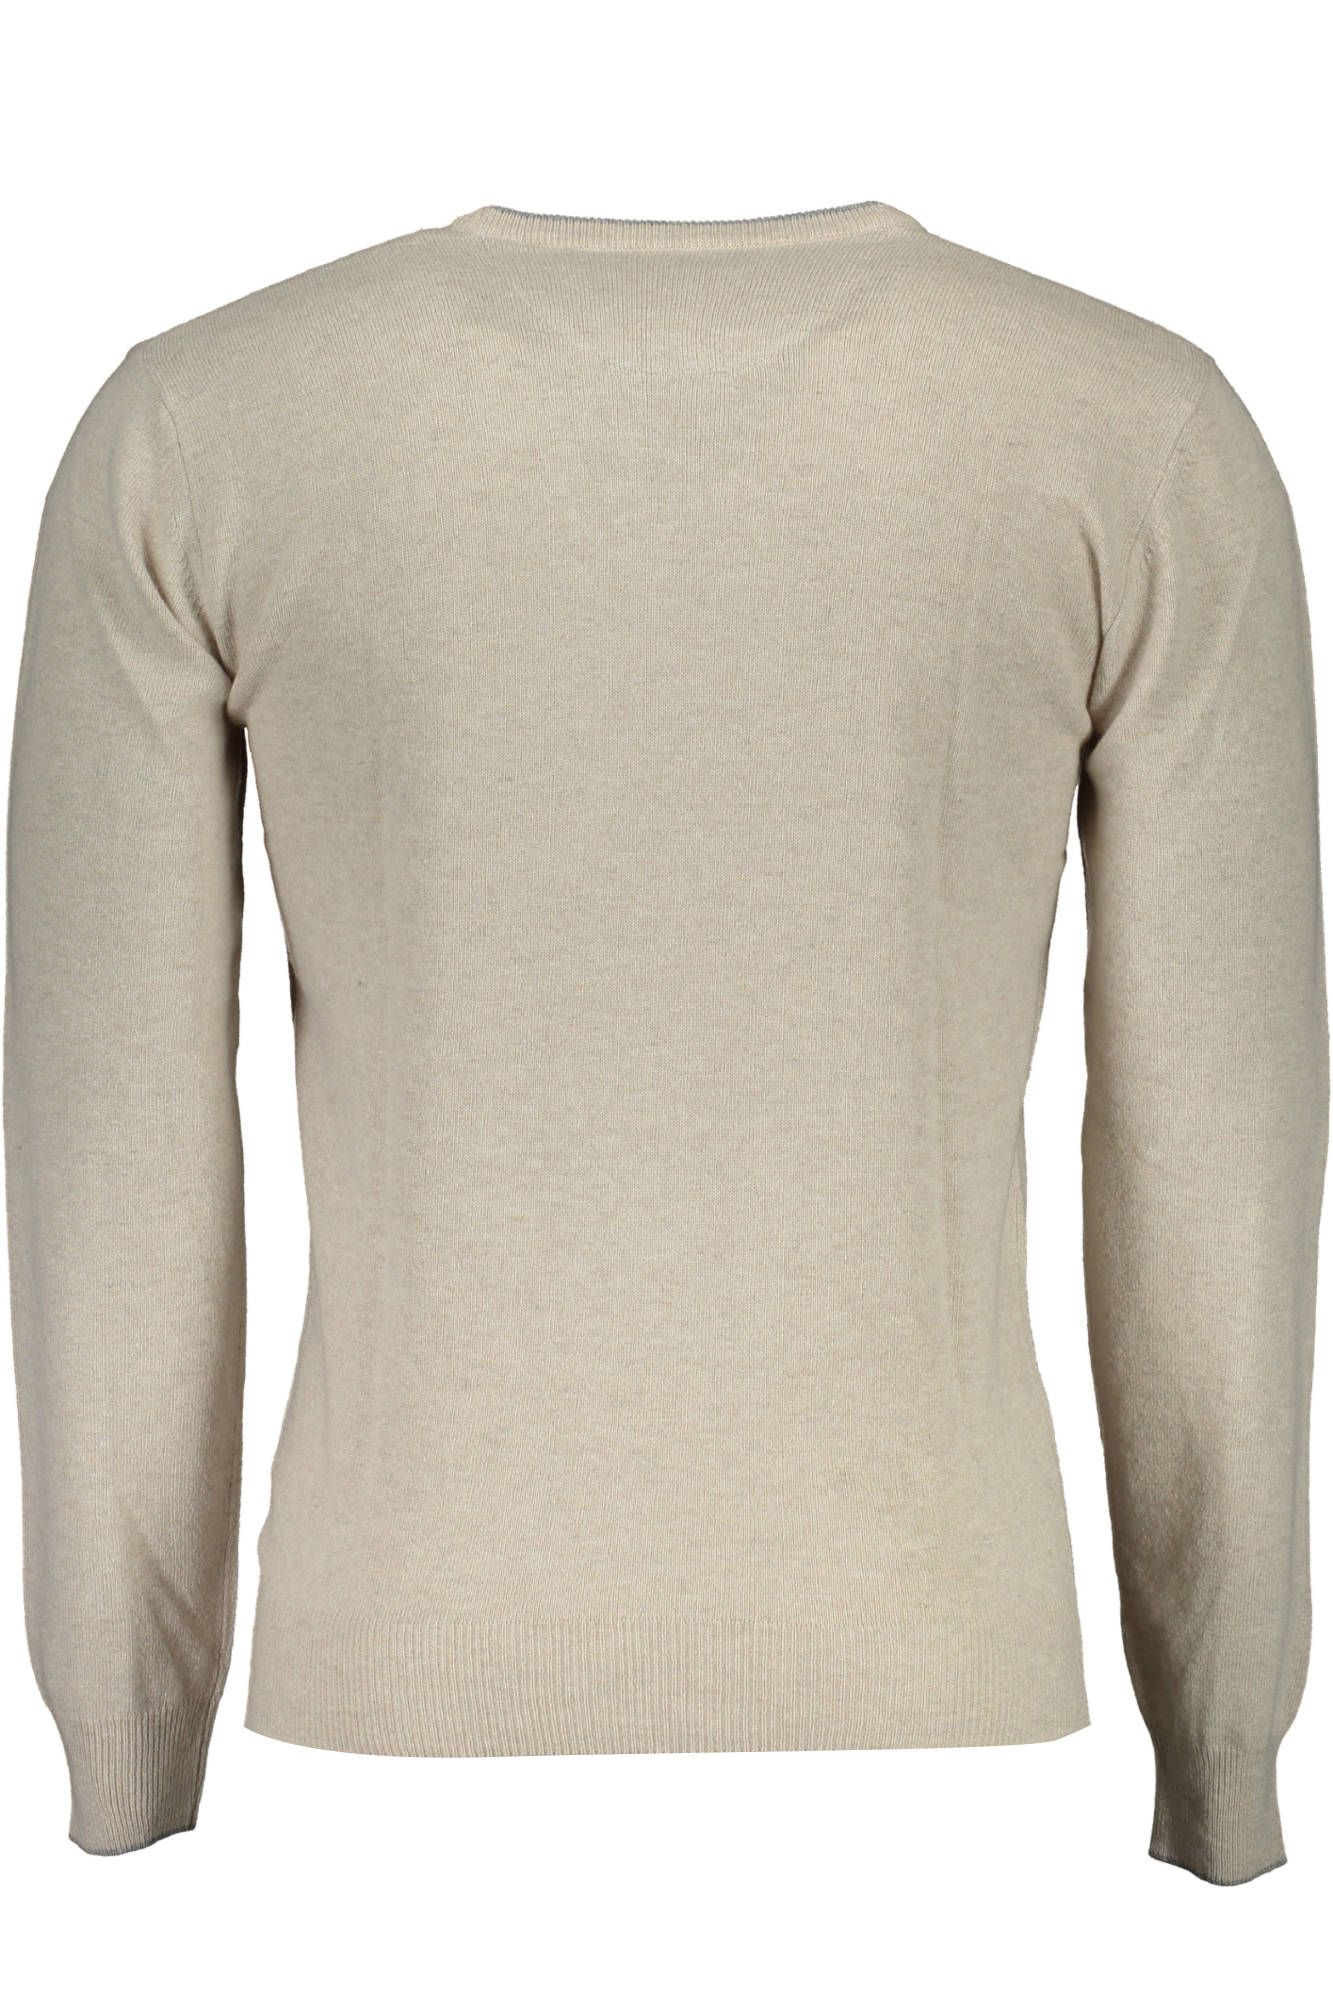 U.S. Polo Assn. Beige Wool Sweater